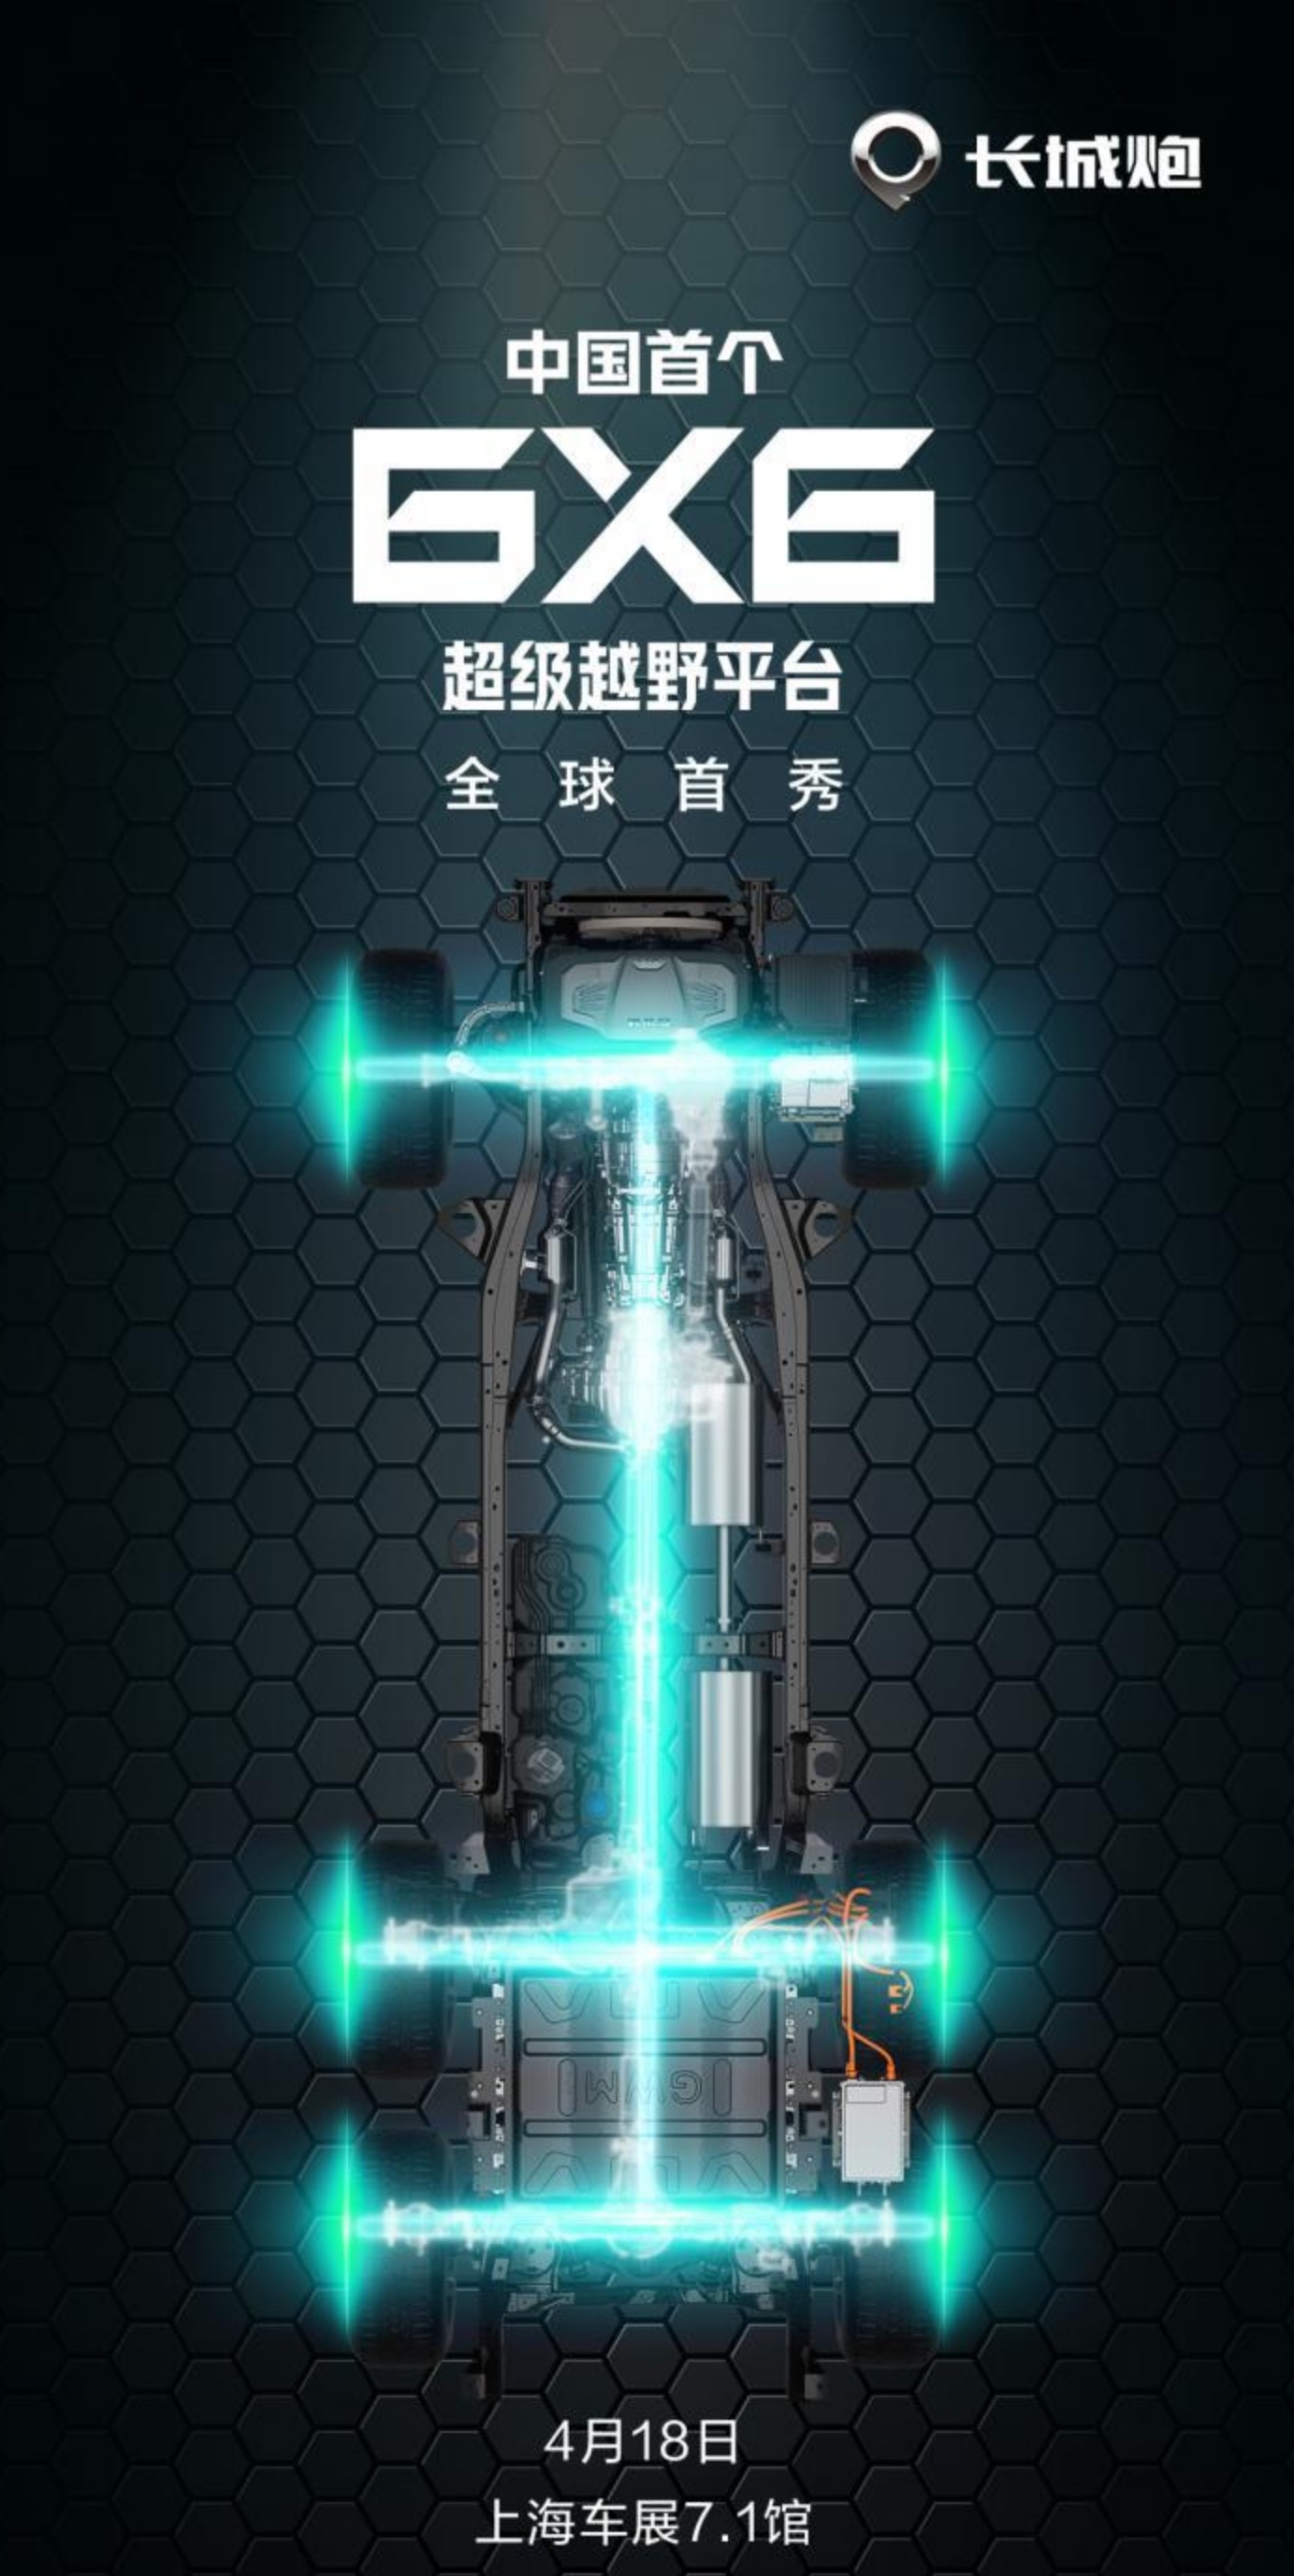 长城将于上海车展发布6x6超级越野平台